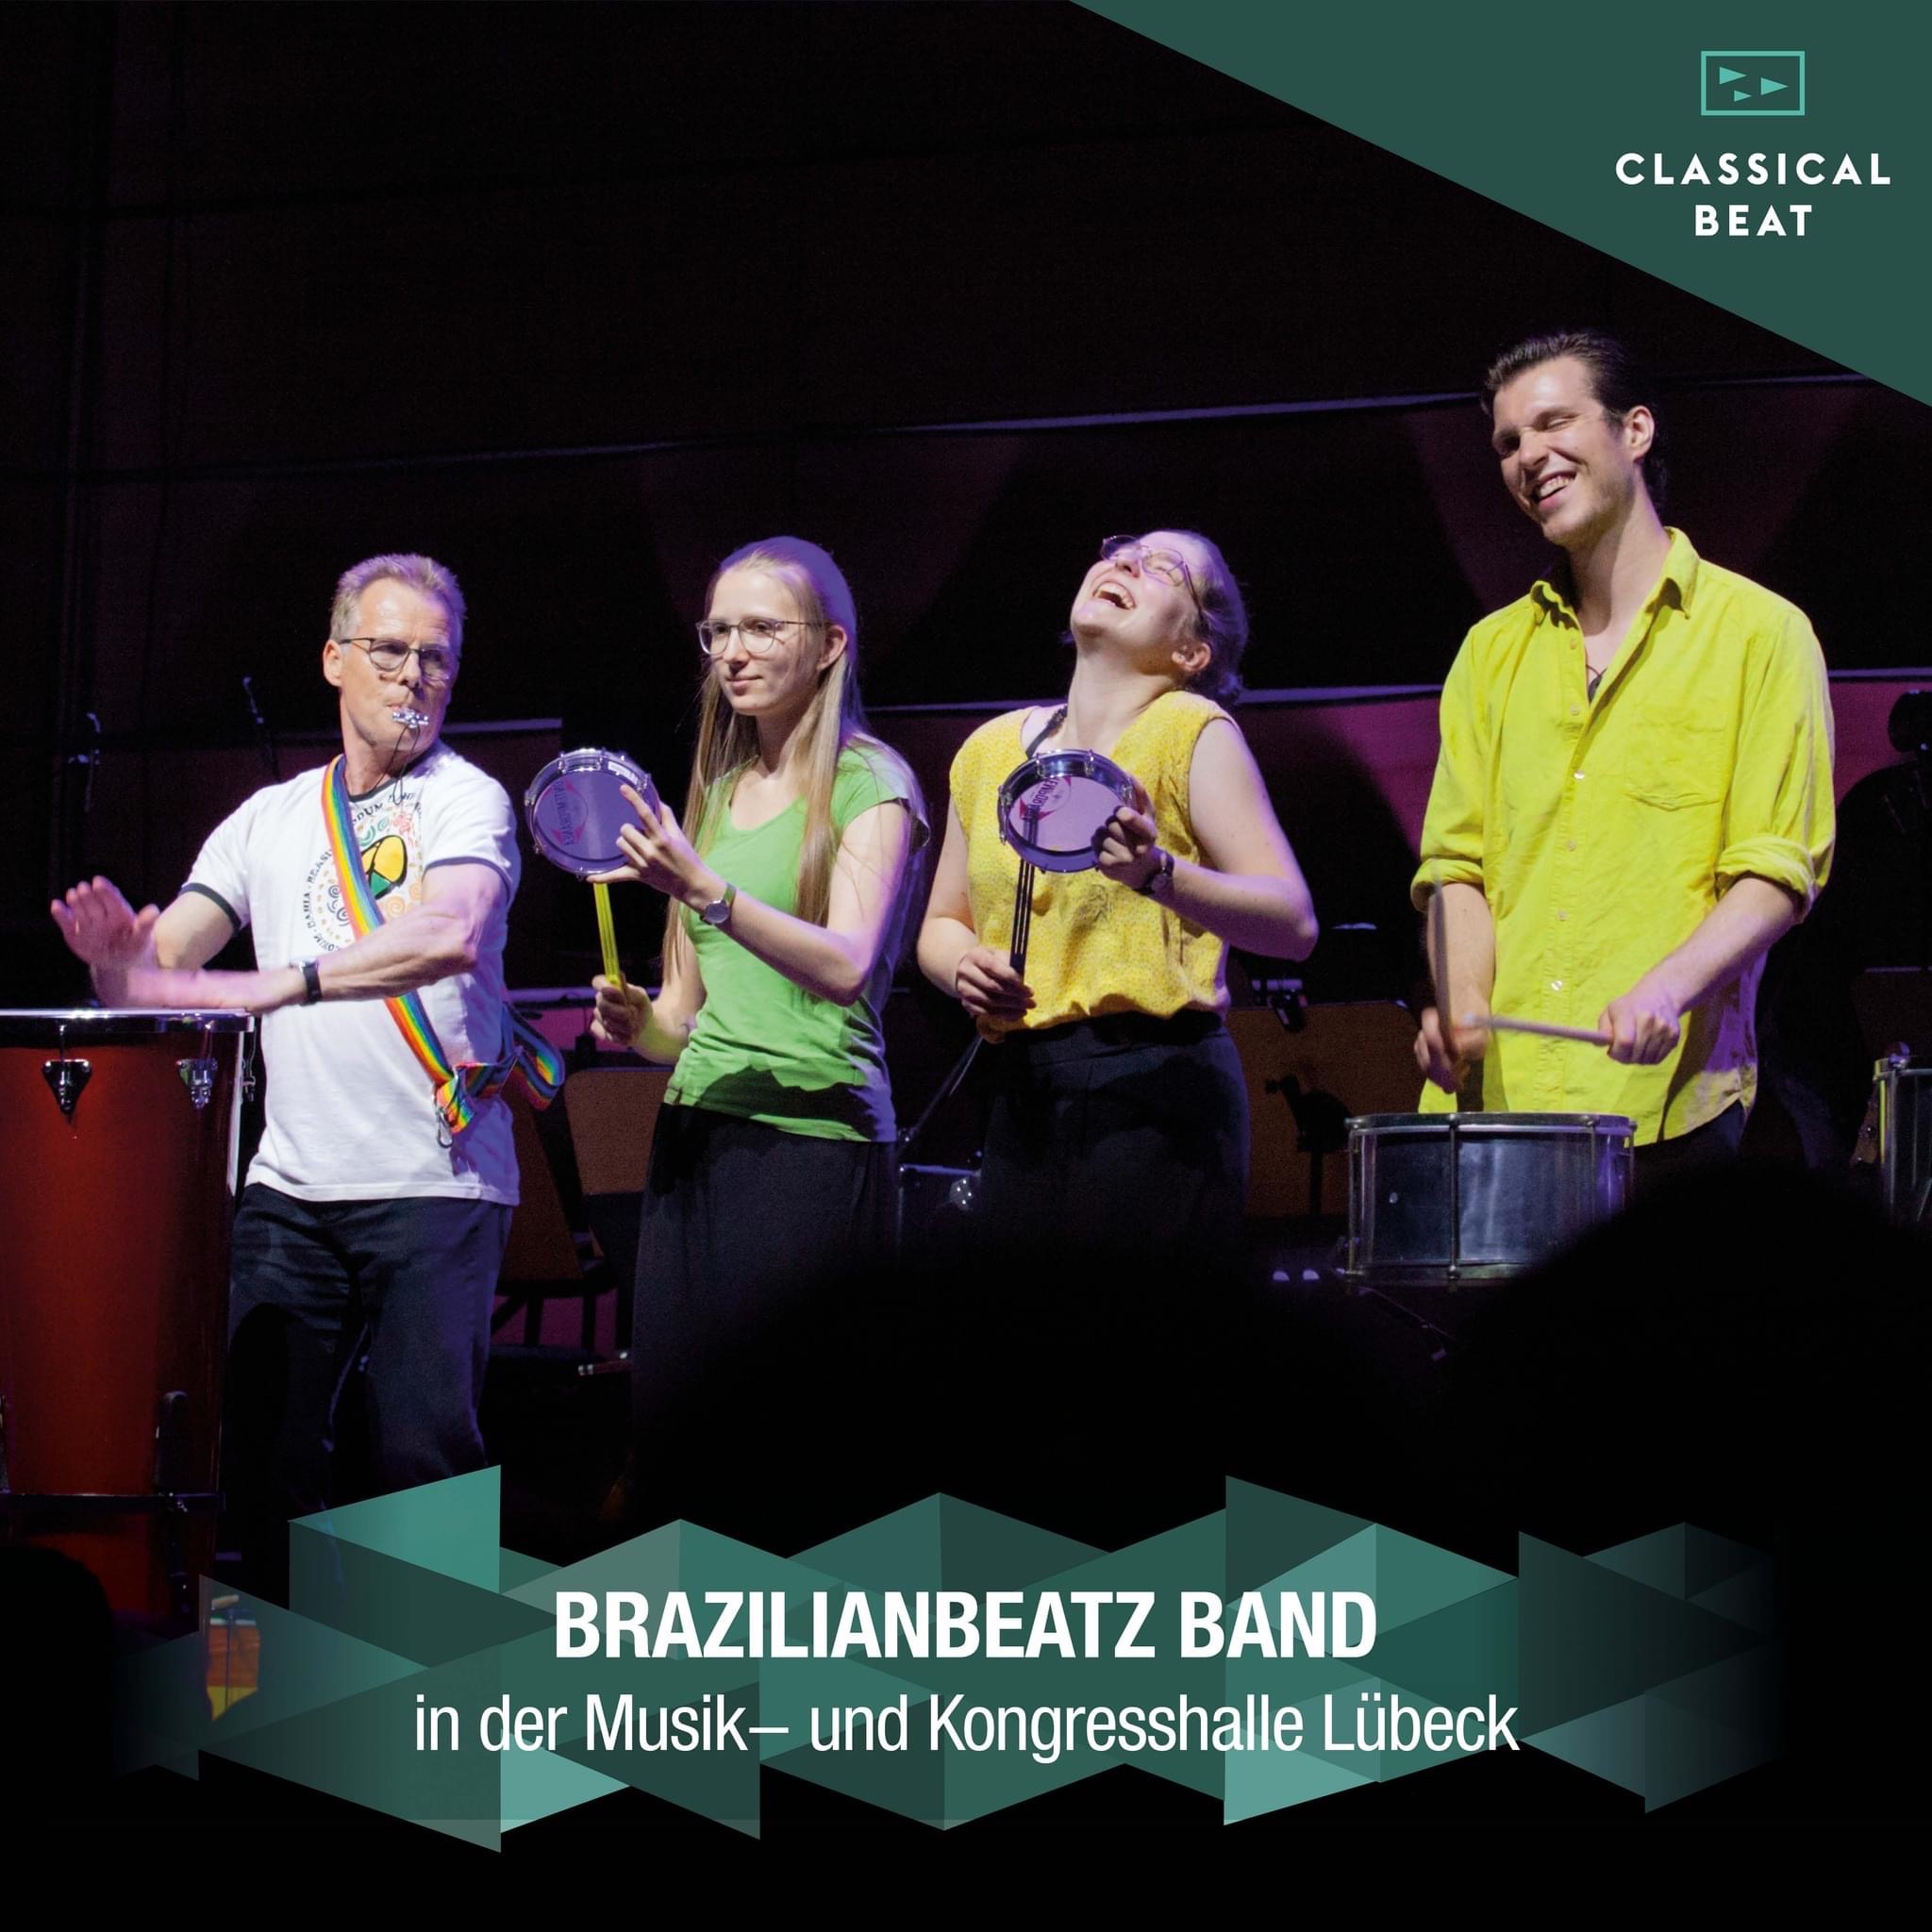 BrazilianBeatz mit "Funky-Samba" in der Musik- und Kongresshalle Lübeck am 21. Juli 2022 (© Classical Beat)